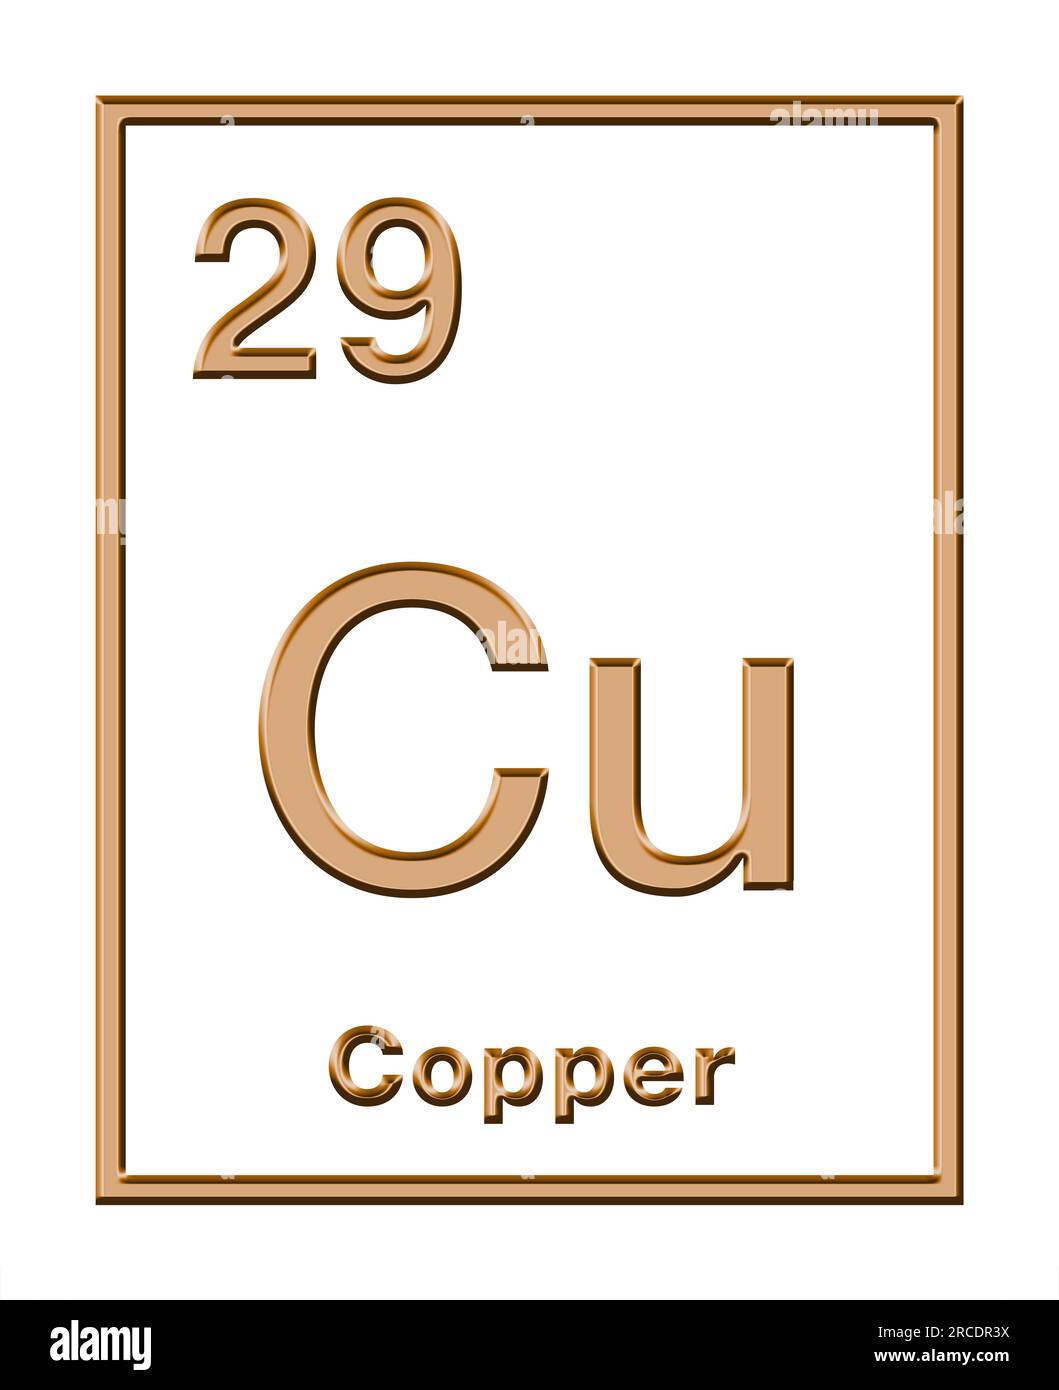 Rame, elemento chimico da tavola periodica, con forma di rilievo. Metallo di transizione, con simbolo chimico Cu (cuprum latino) e con numero atomico 29. Foto Stock